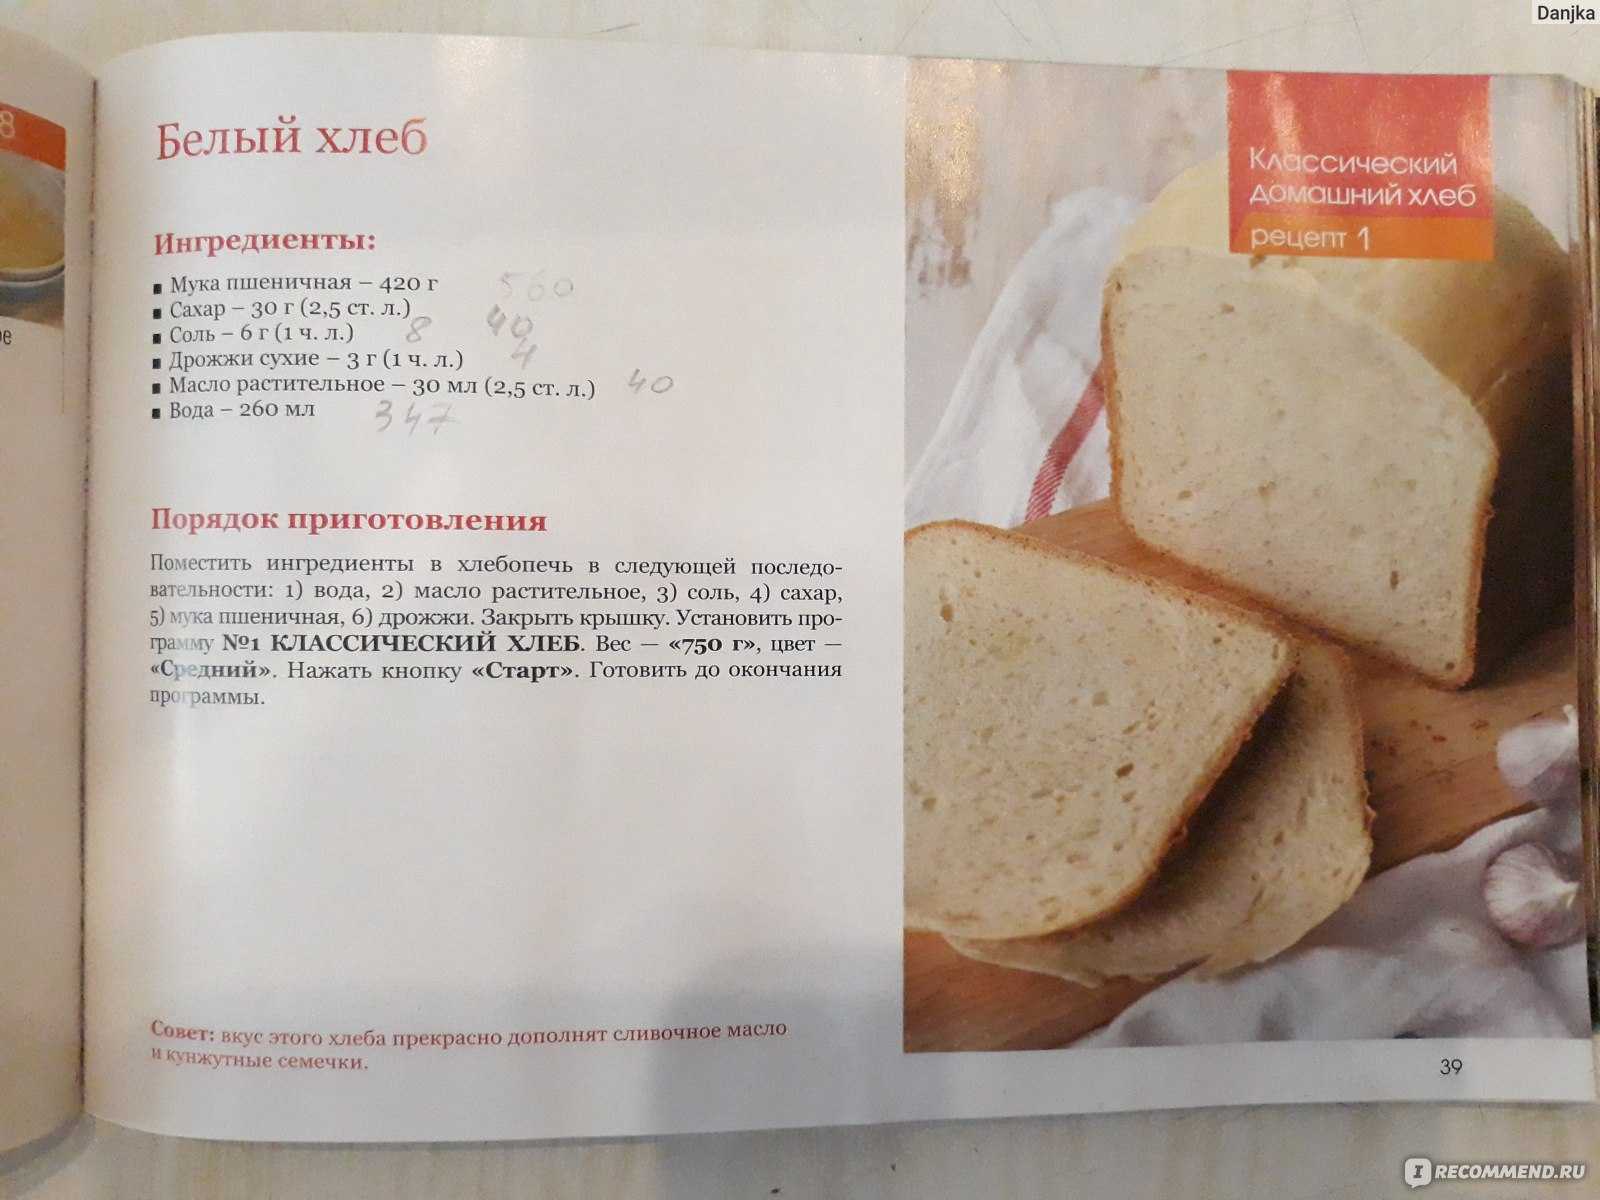 Рецепт теста для булочек в хлебопечке. Рецепт хлеба в хлебопечке. Книжка с рецептами для хлебопечки. Рецепт белого хлеба в хлебопечке. Книжка с рецептами для хлебопечки редмонд.